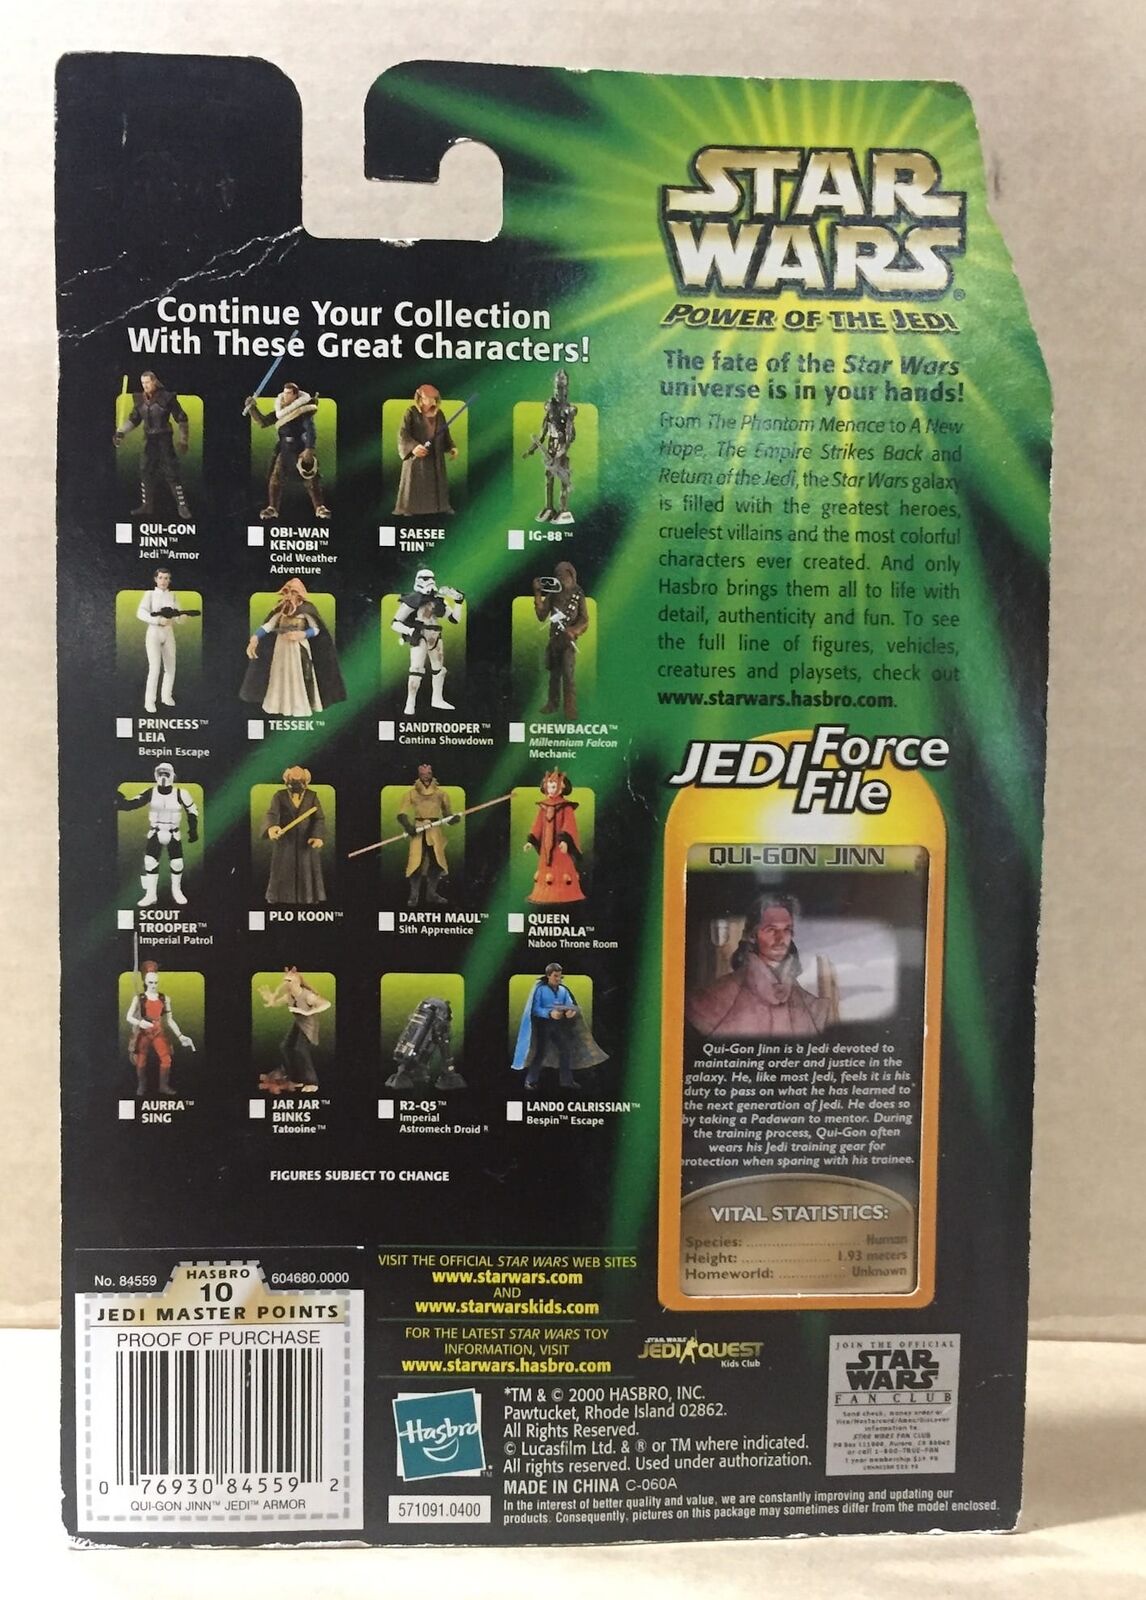 STAR WARS - HASBRO - JEDI FORCE FILE - POTJ - QUI-GON JINN - Jedi Training Gear